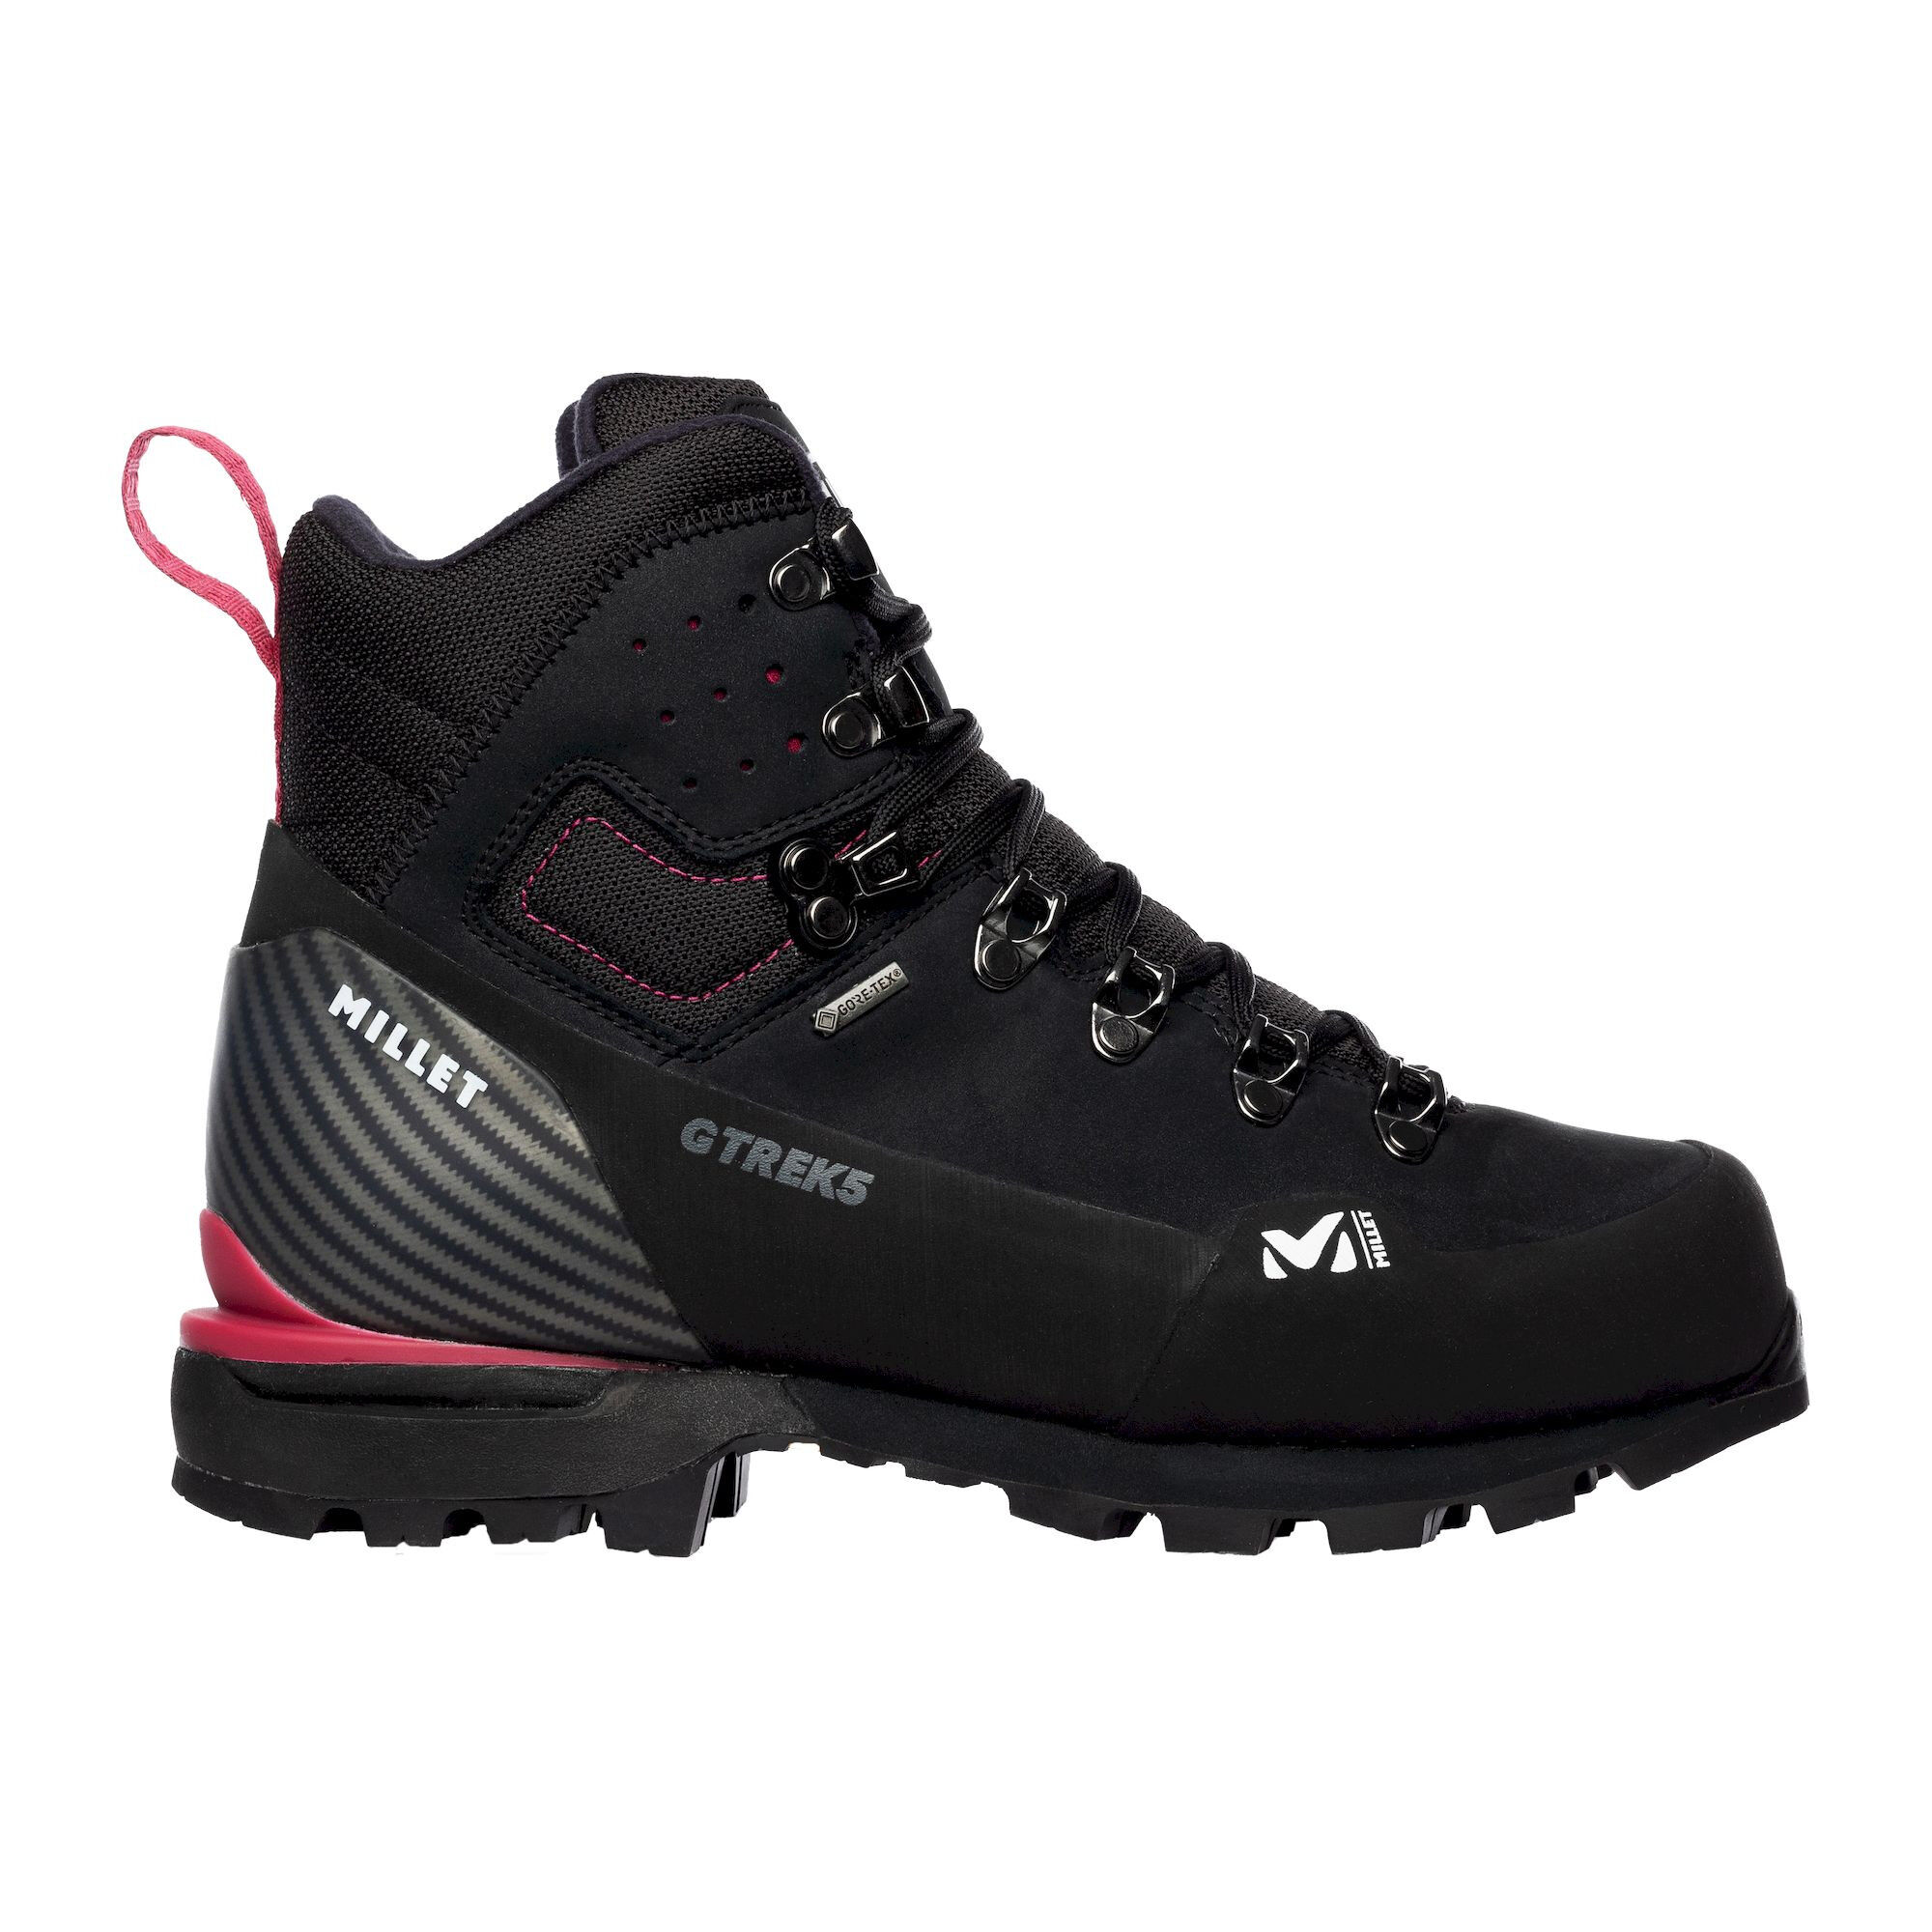 Millet G Trek 5 GTX - Hiking boots - Women's